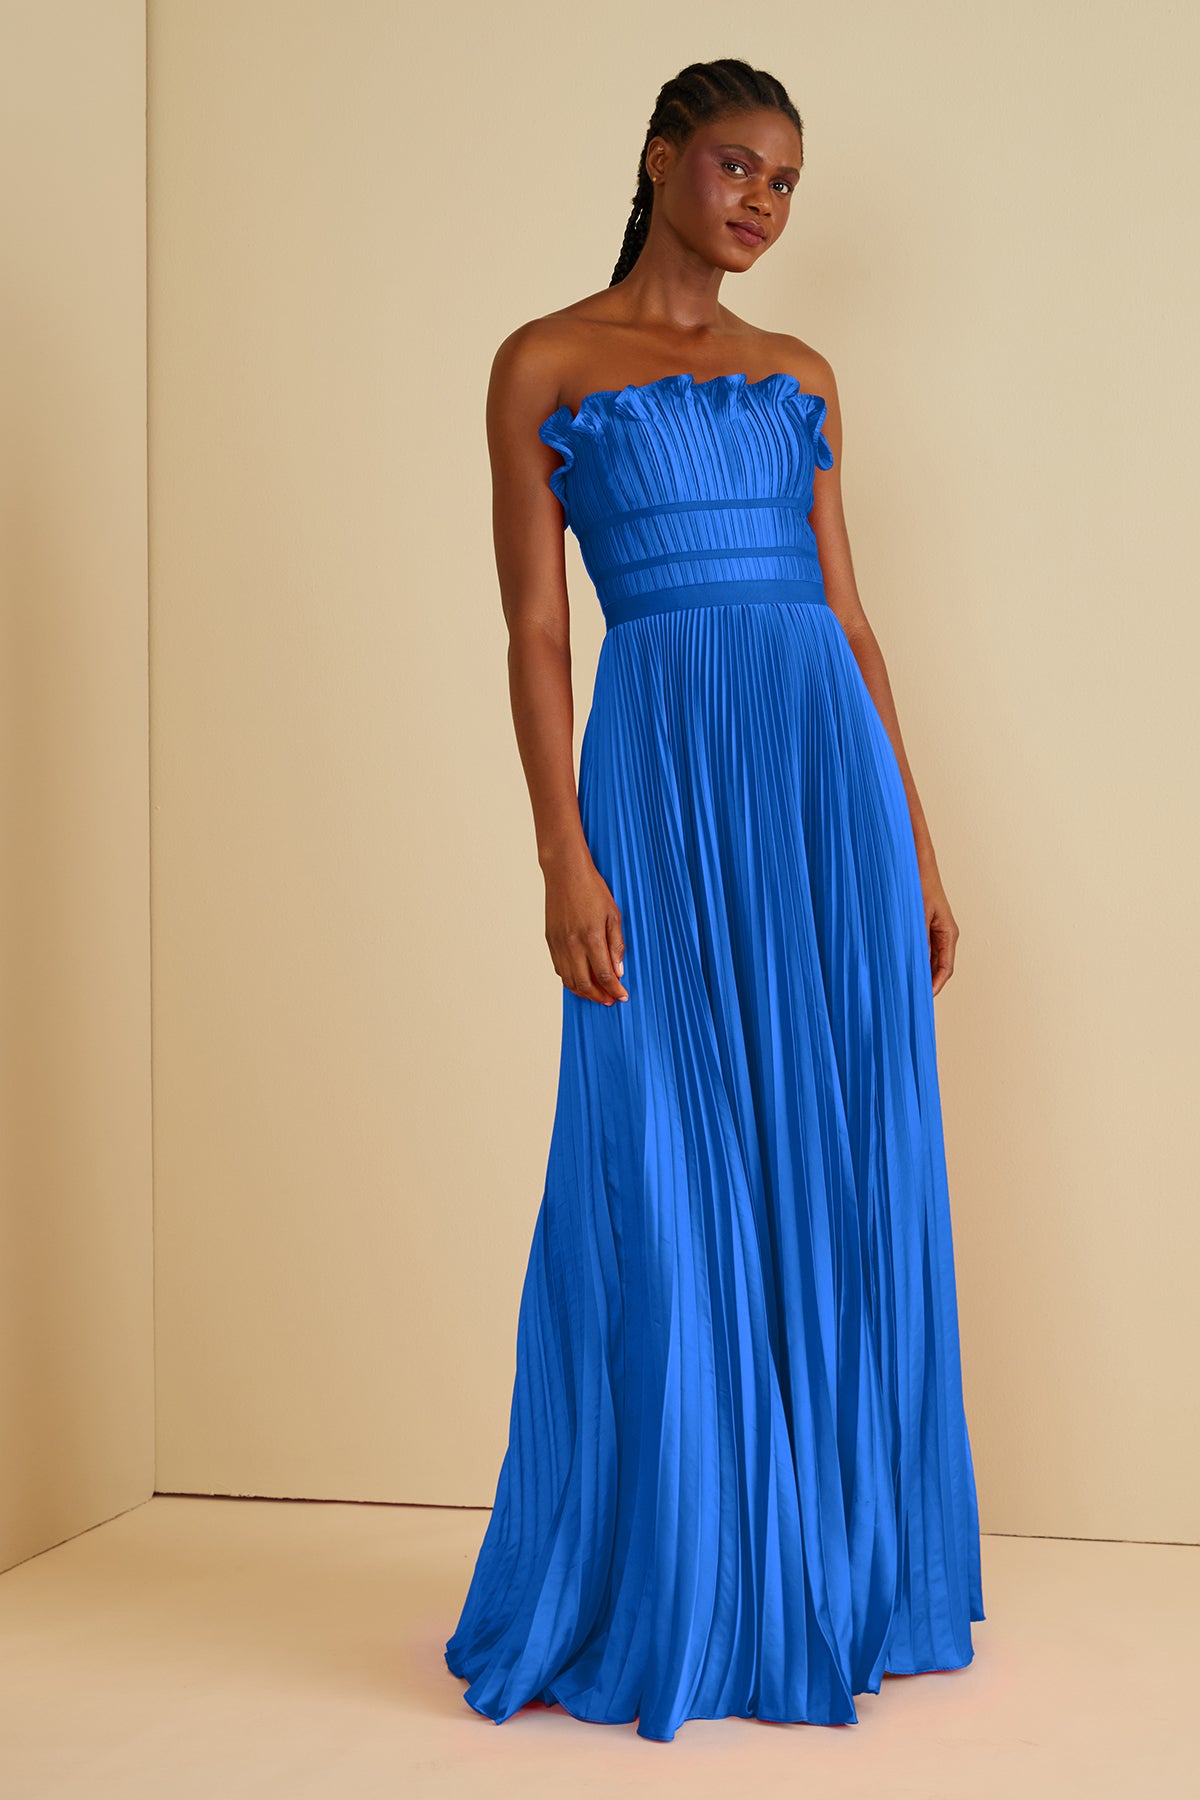 Ashley Lauren 11233 Tulle V-Neck Prom Dress Ball Gown with Ruffle Skir –  Glass Slipper Formals